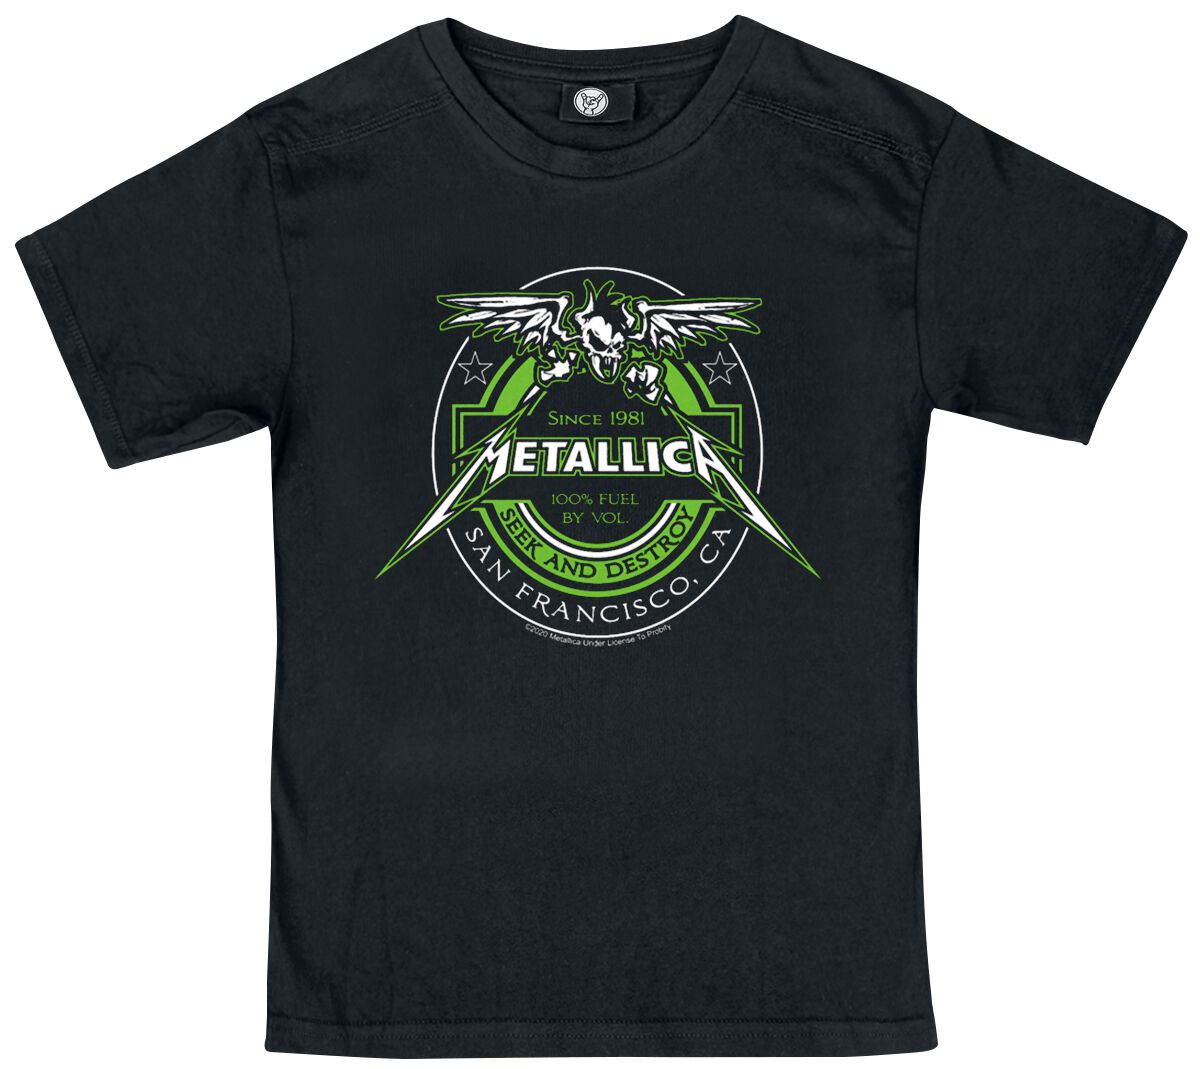 Metallica T-Shirt für Kleinkinder - Metal-Kids - Fuel - für Mädchen & Jungen - schwarz  - Lizenziertes Merchandise!